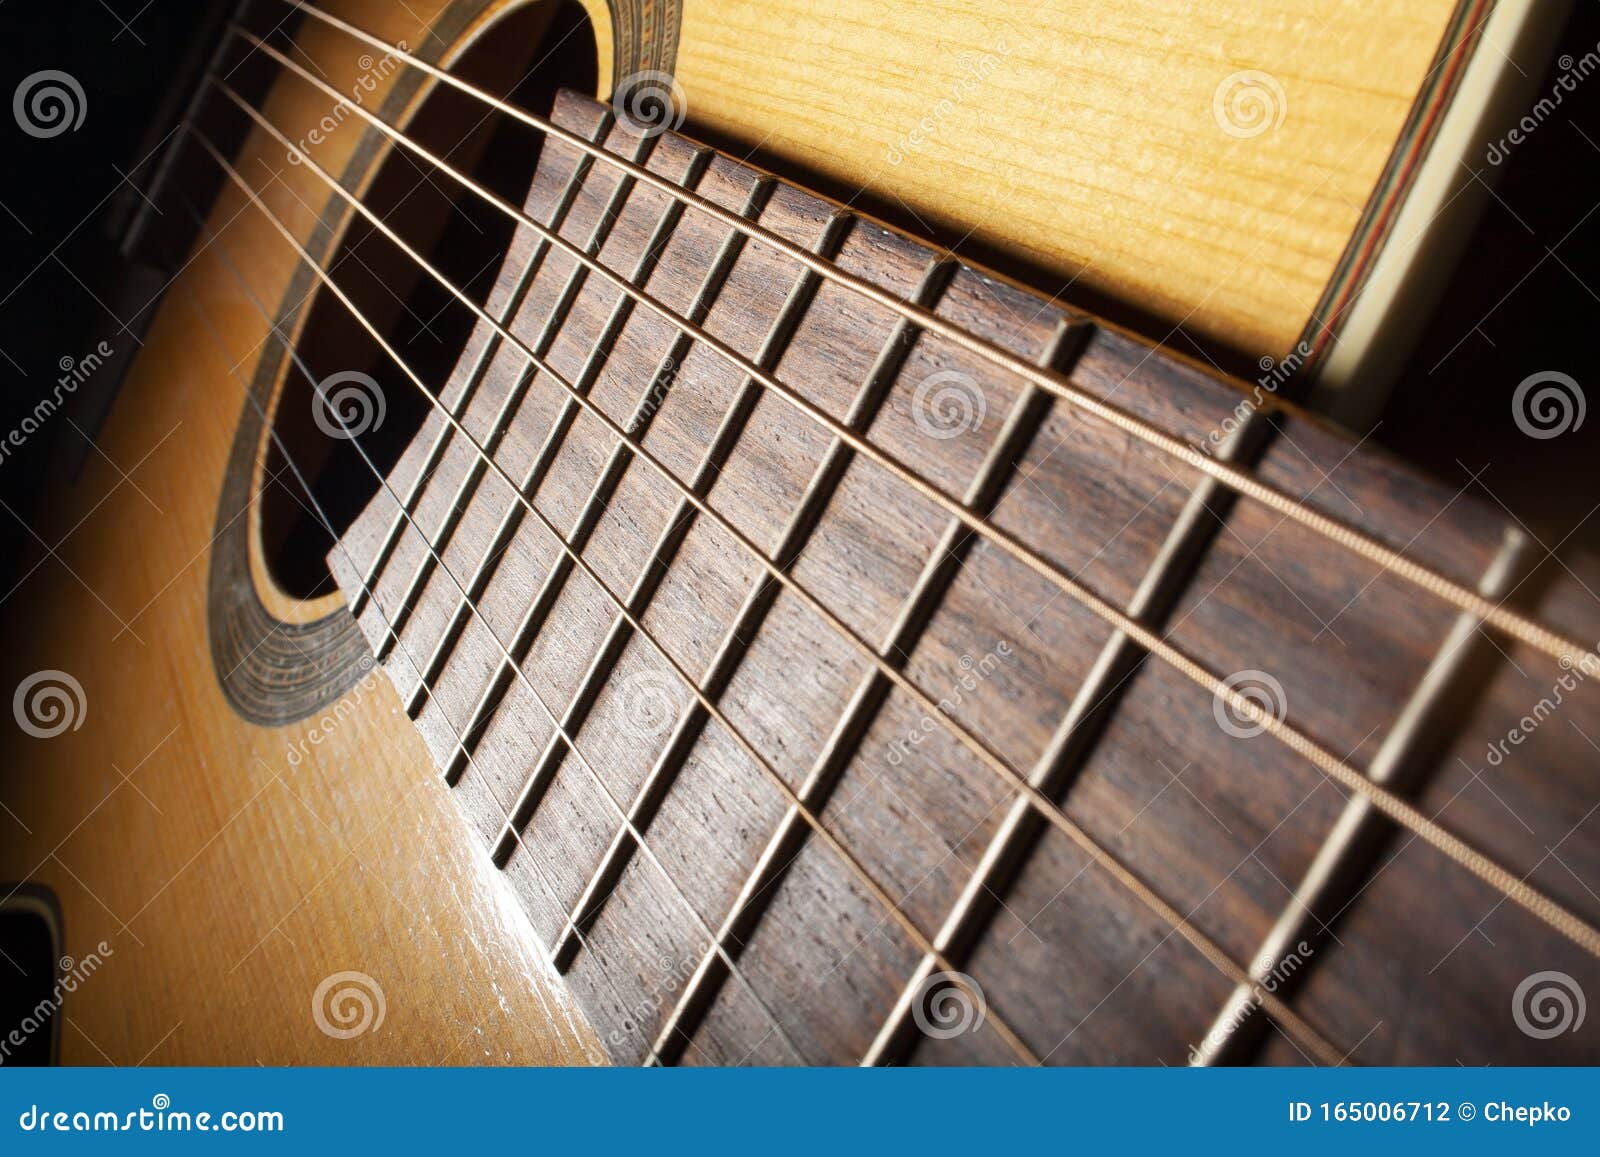 closeup image of guitar fingerboard